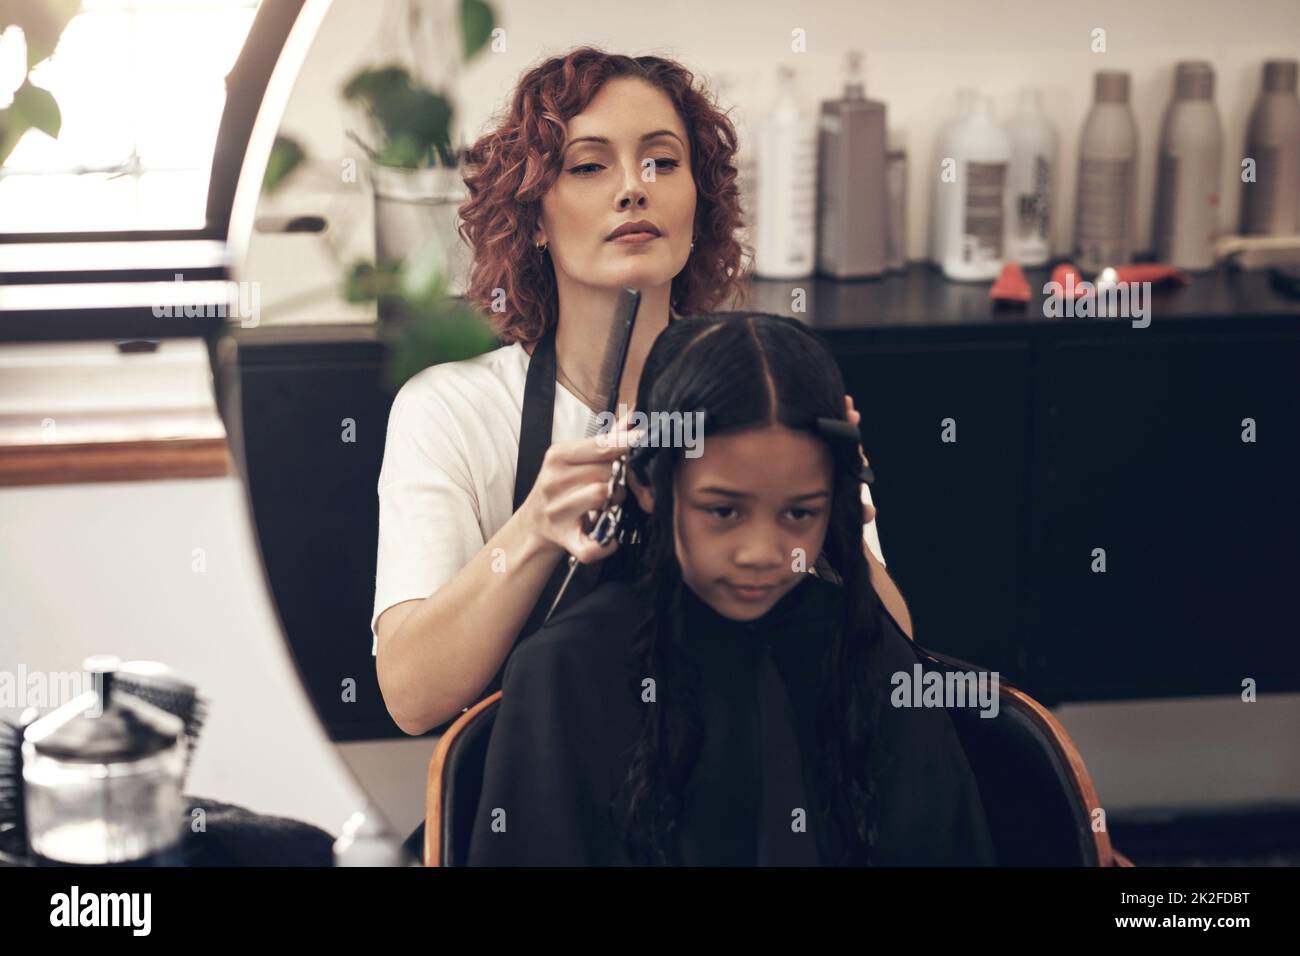 Ich spreche Haare. Englisch ist meine zweite Sprache. Aufnahme eines kleinen Mädchens, das sich im Salon die Haare gemacht hat. Stockfoto